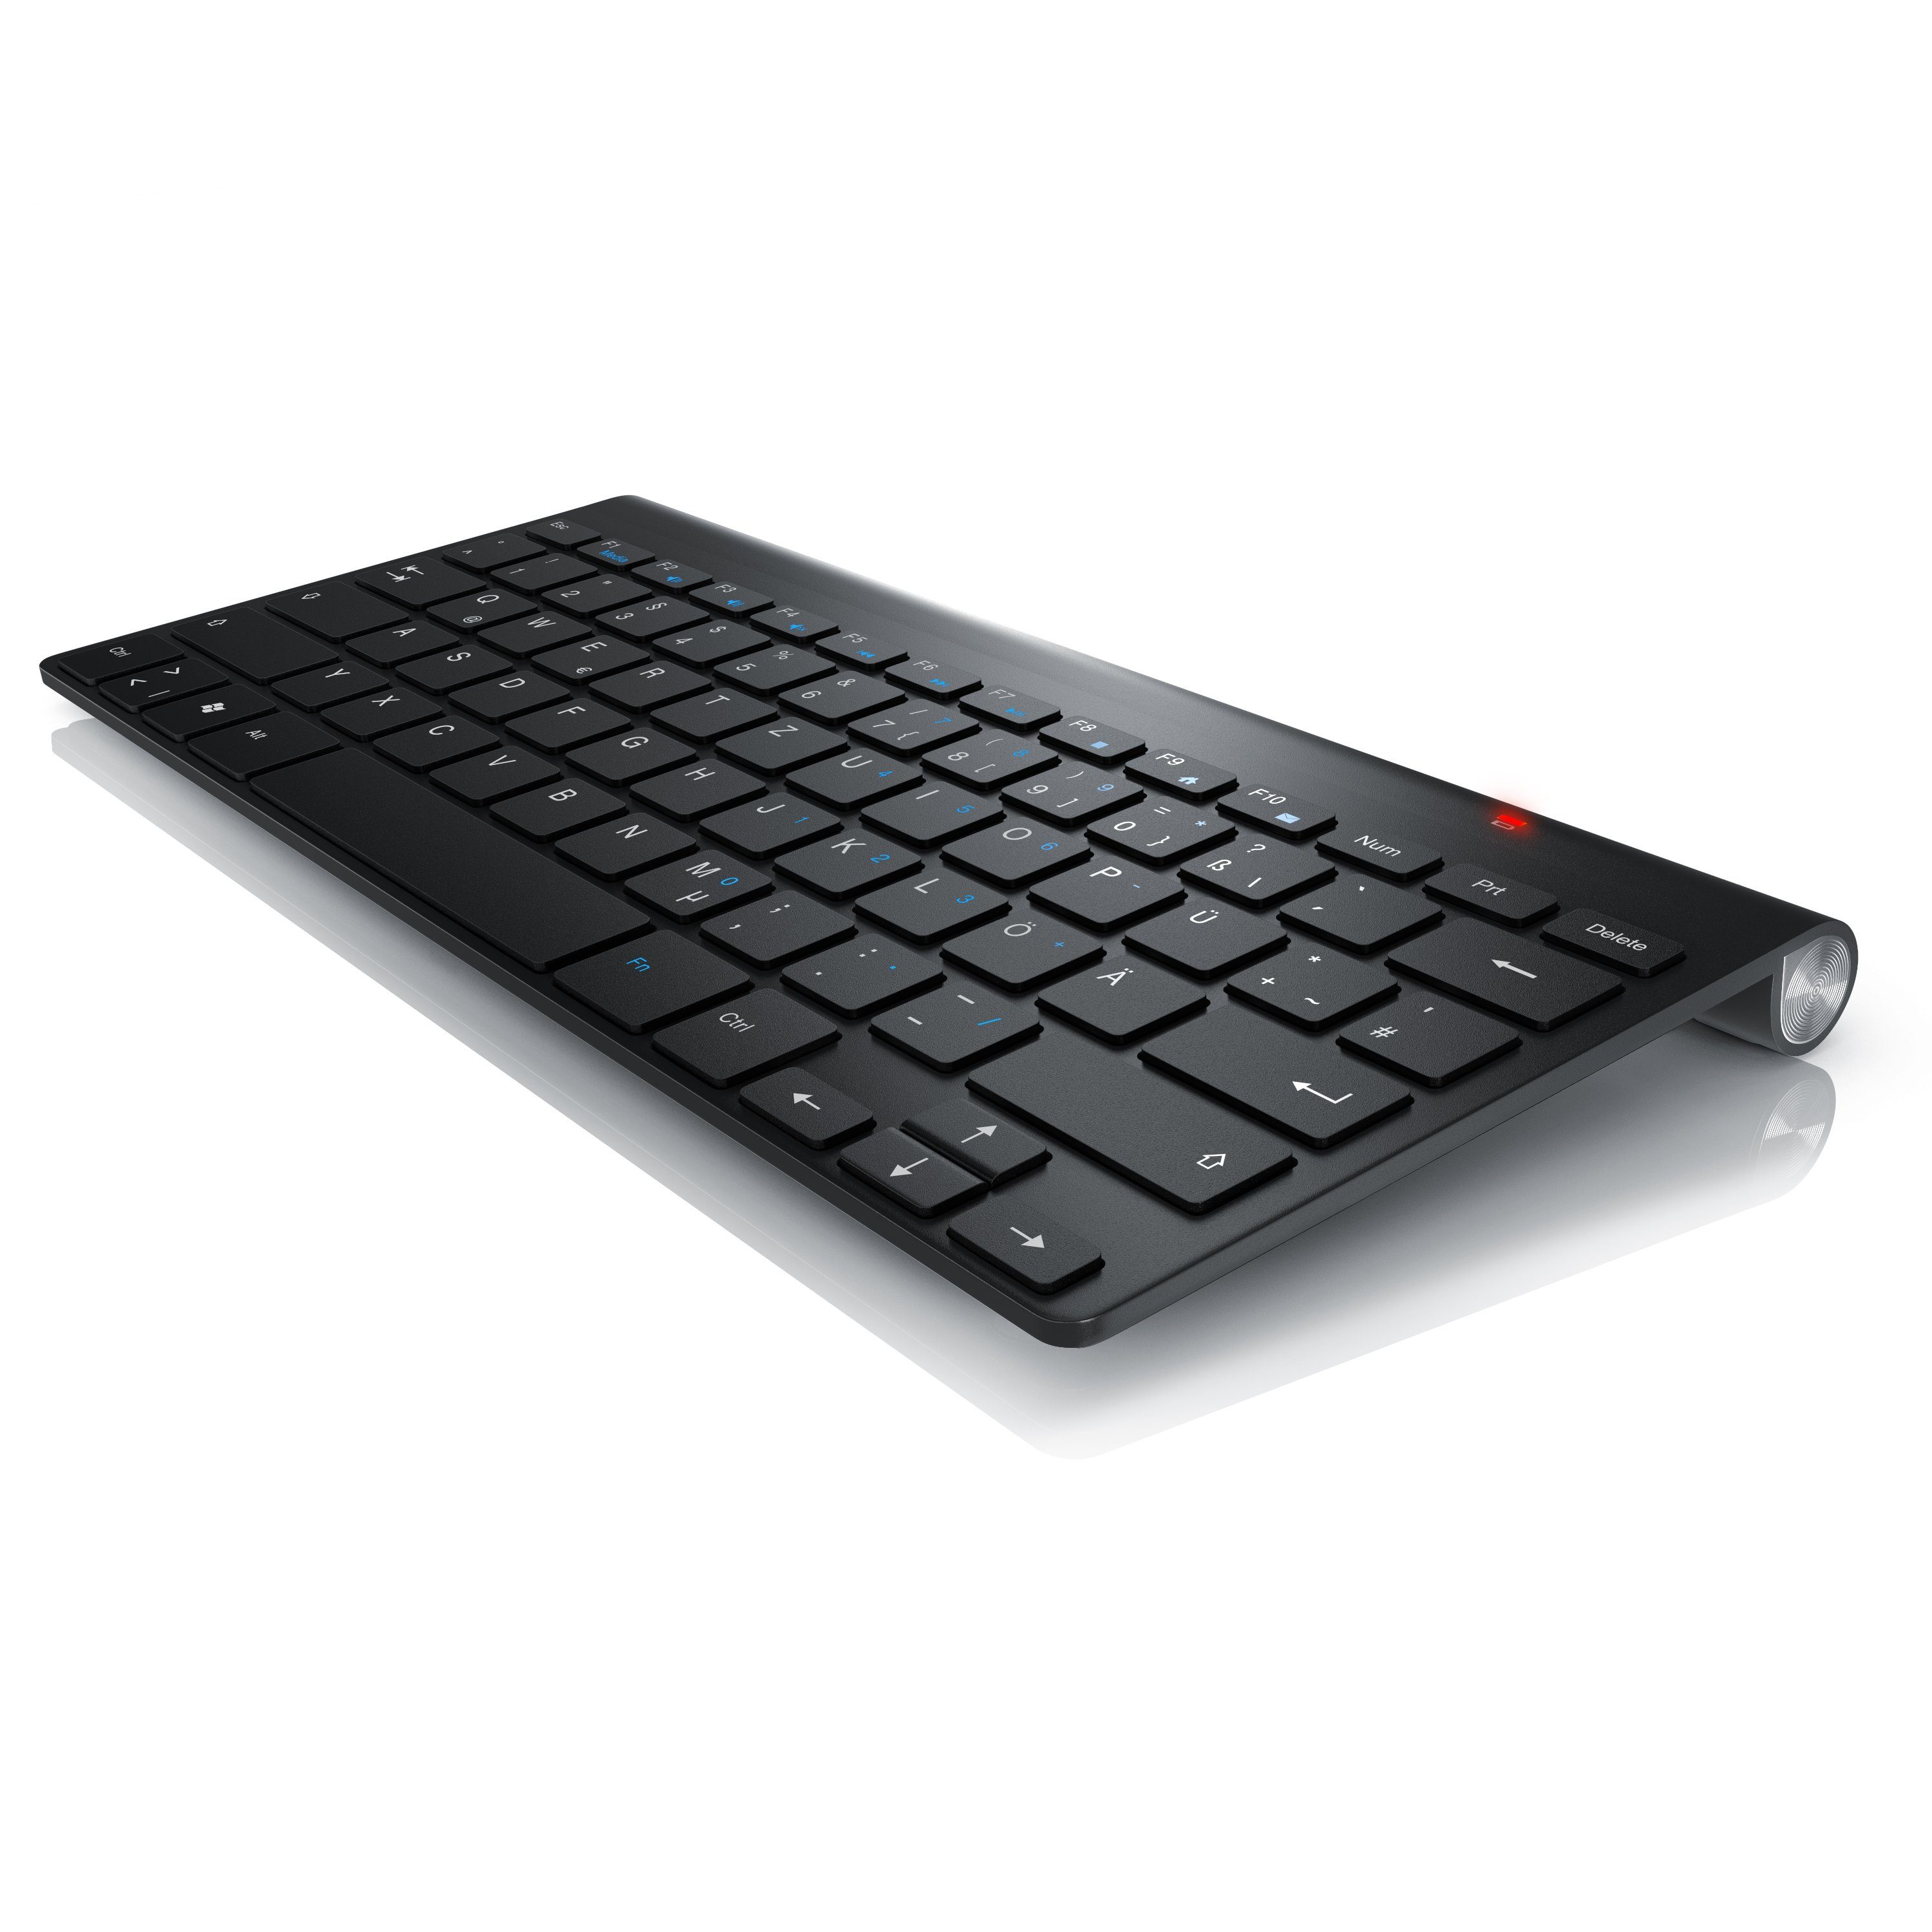 Aplic Wireless-Tastatur (kabelloses Slim Layout) 2,4GHz, Keyboard Windows Tastaturlayout, QWERTZ